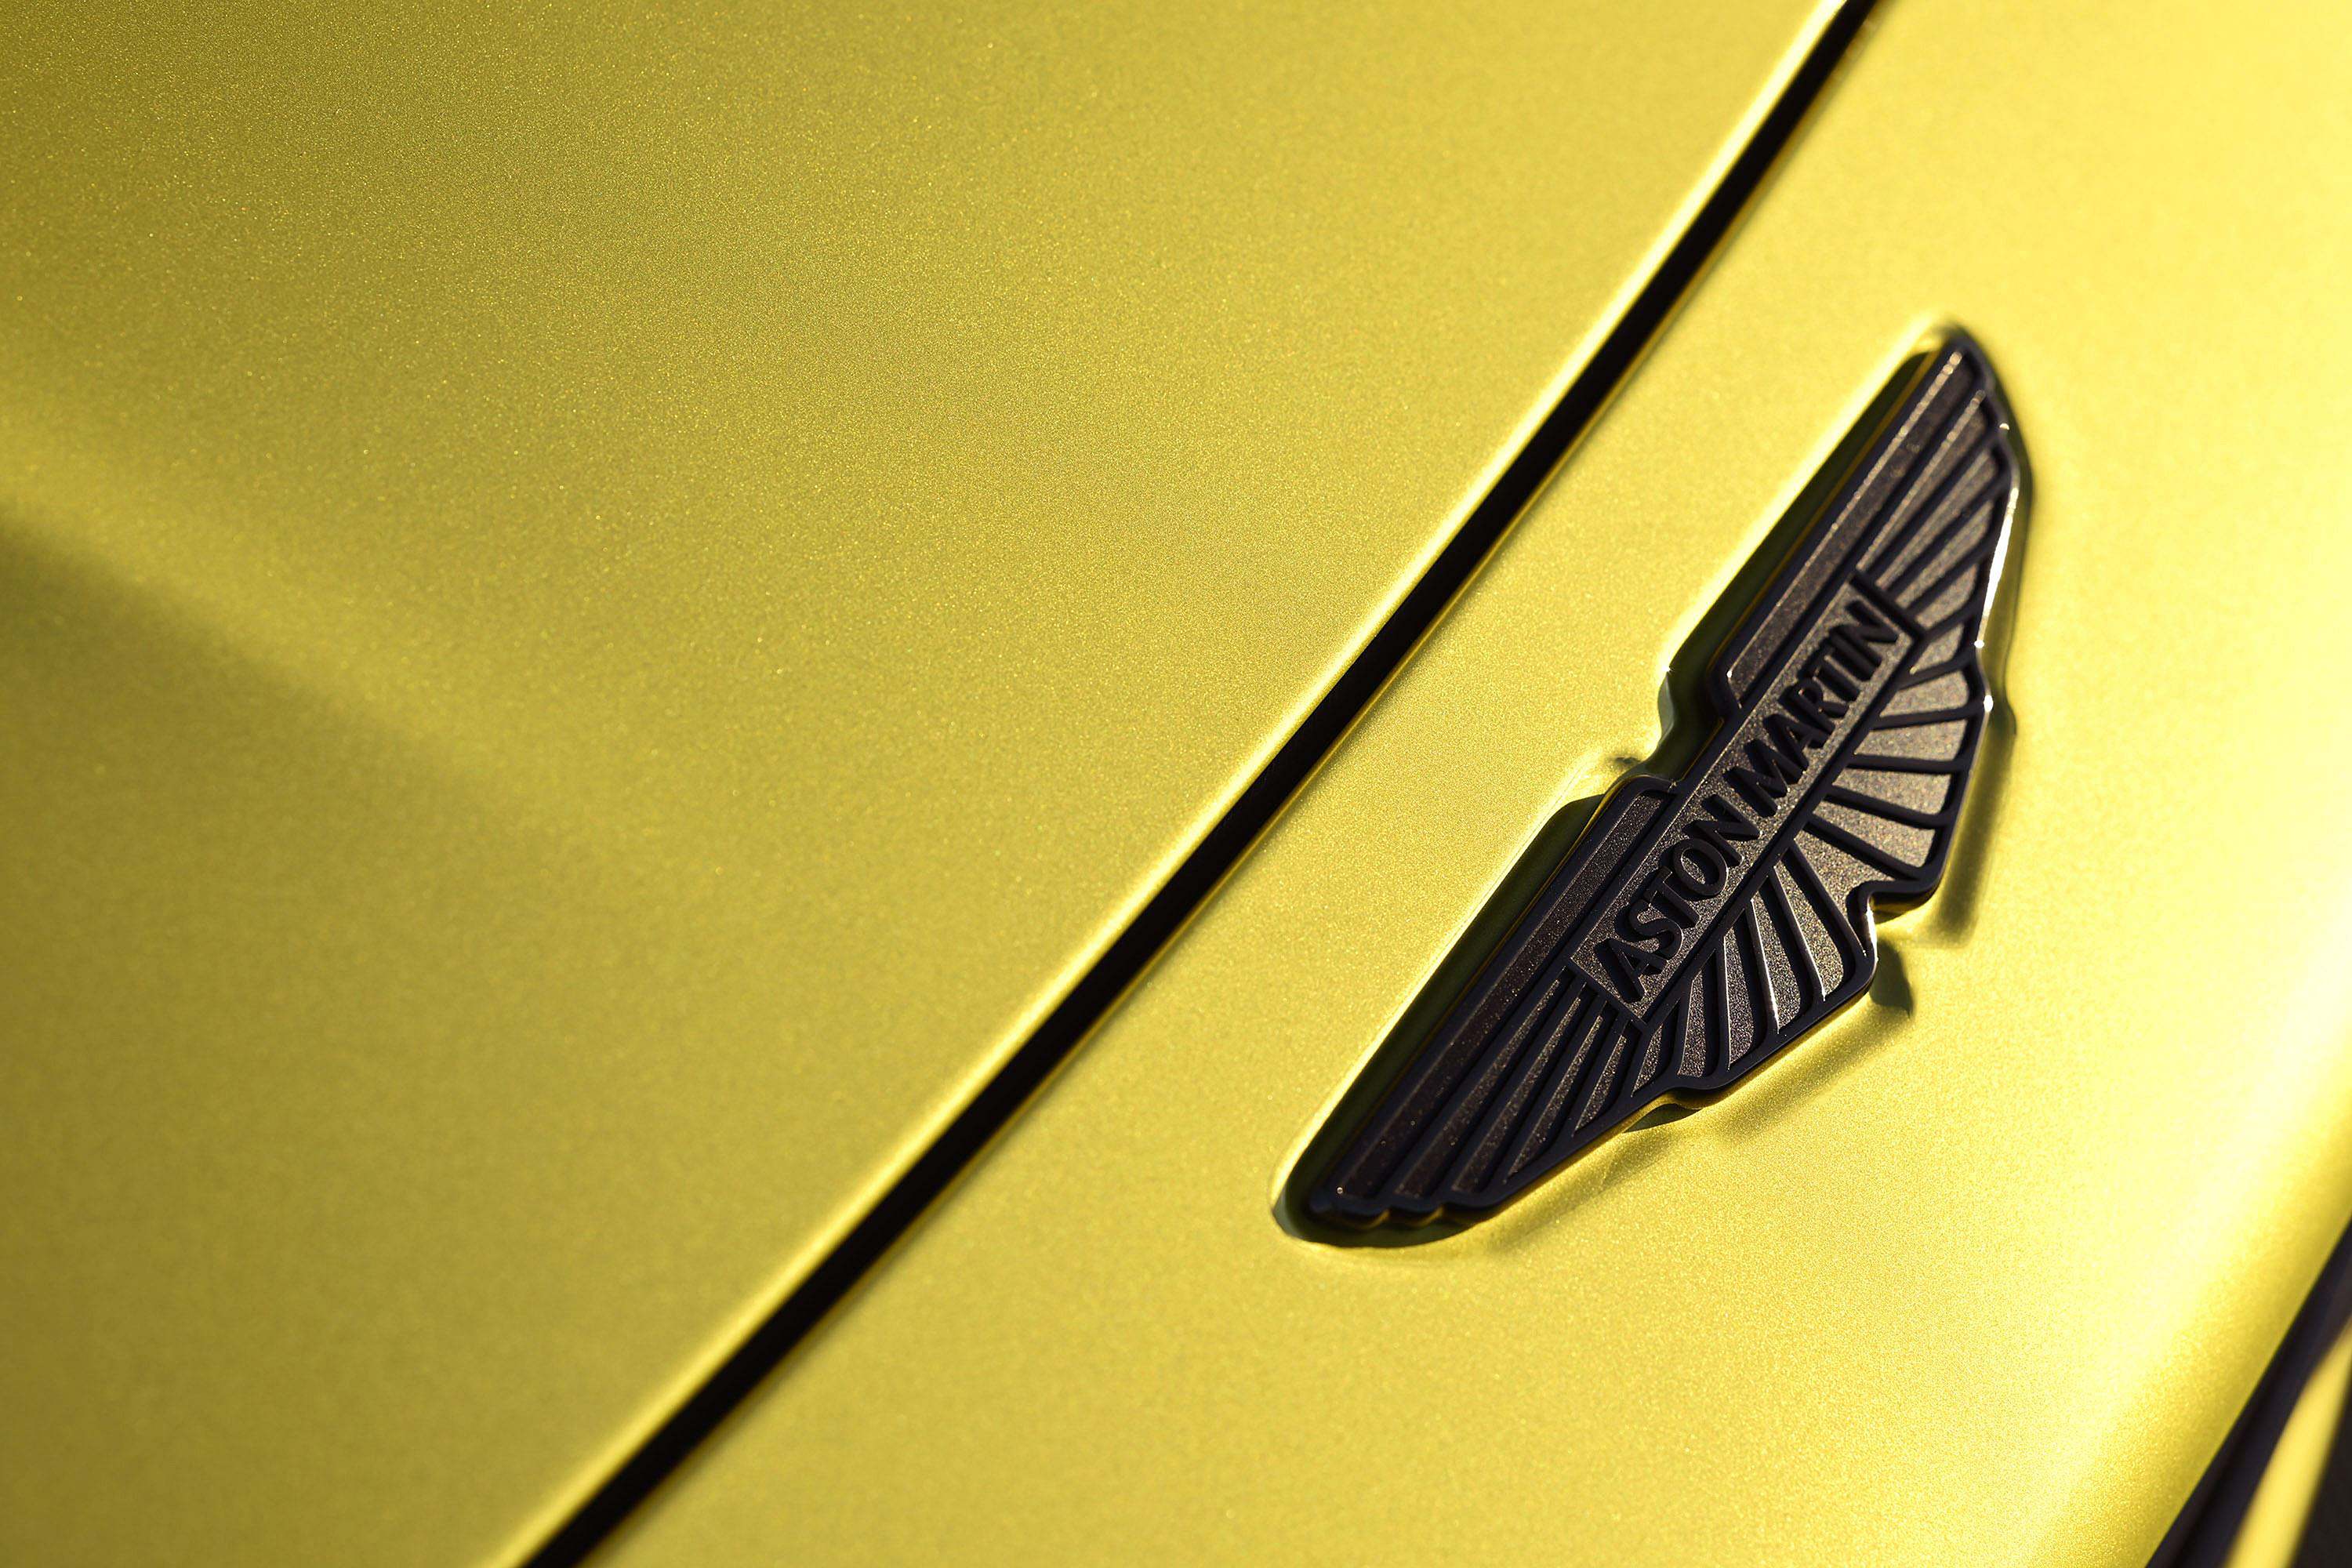 Stunning: the new Aston Martin Vantage